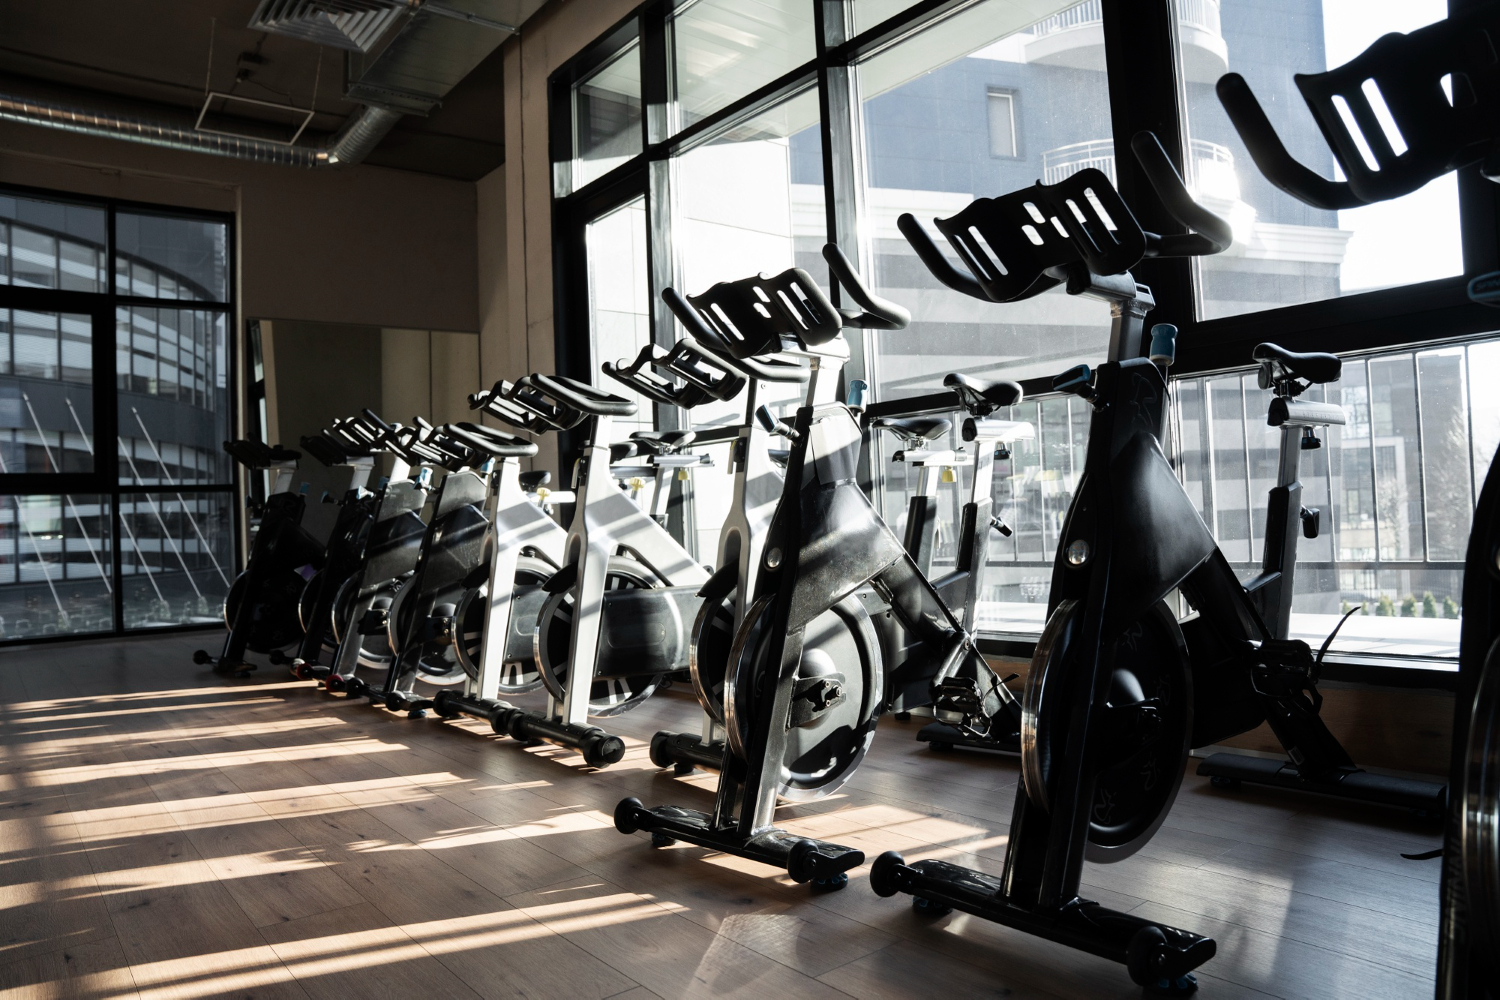 Abre las puertas a la salud y al éxito: ¡Invierte en nuestra inspiradora sala de fitness!